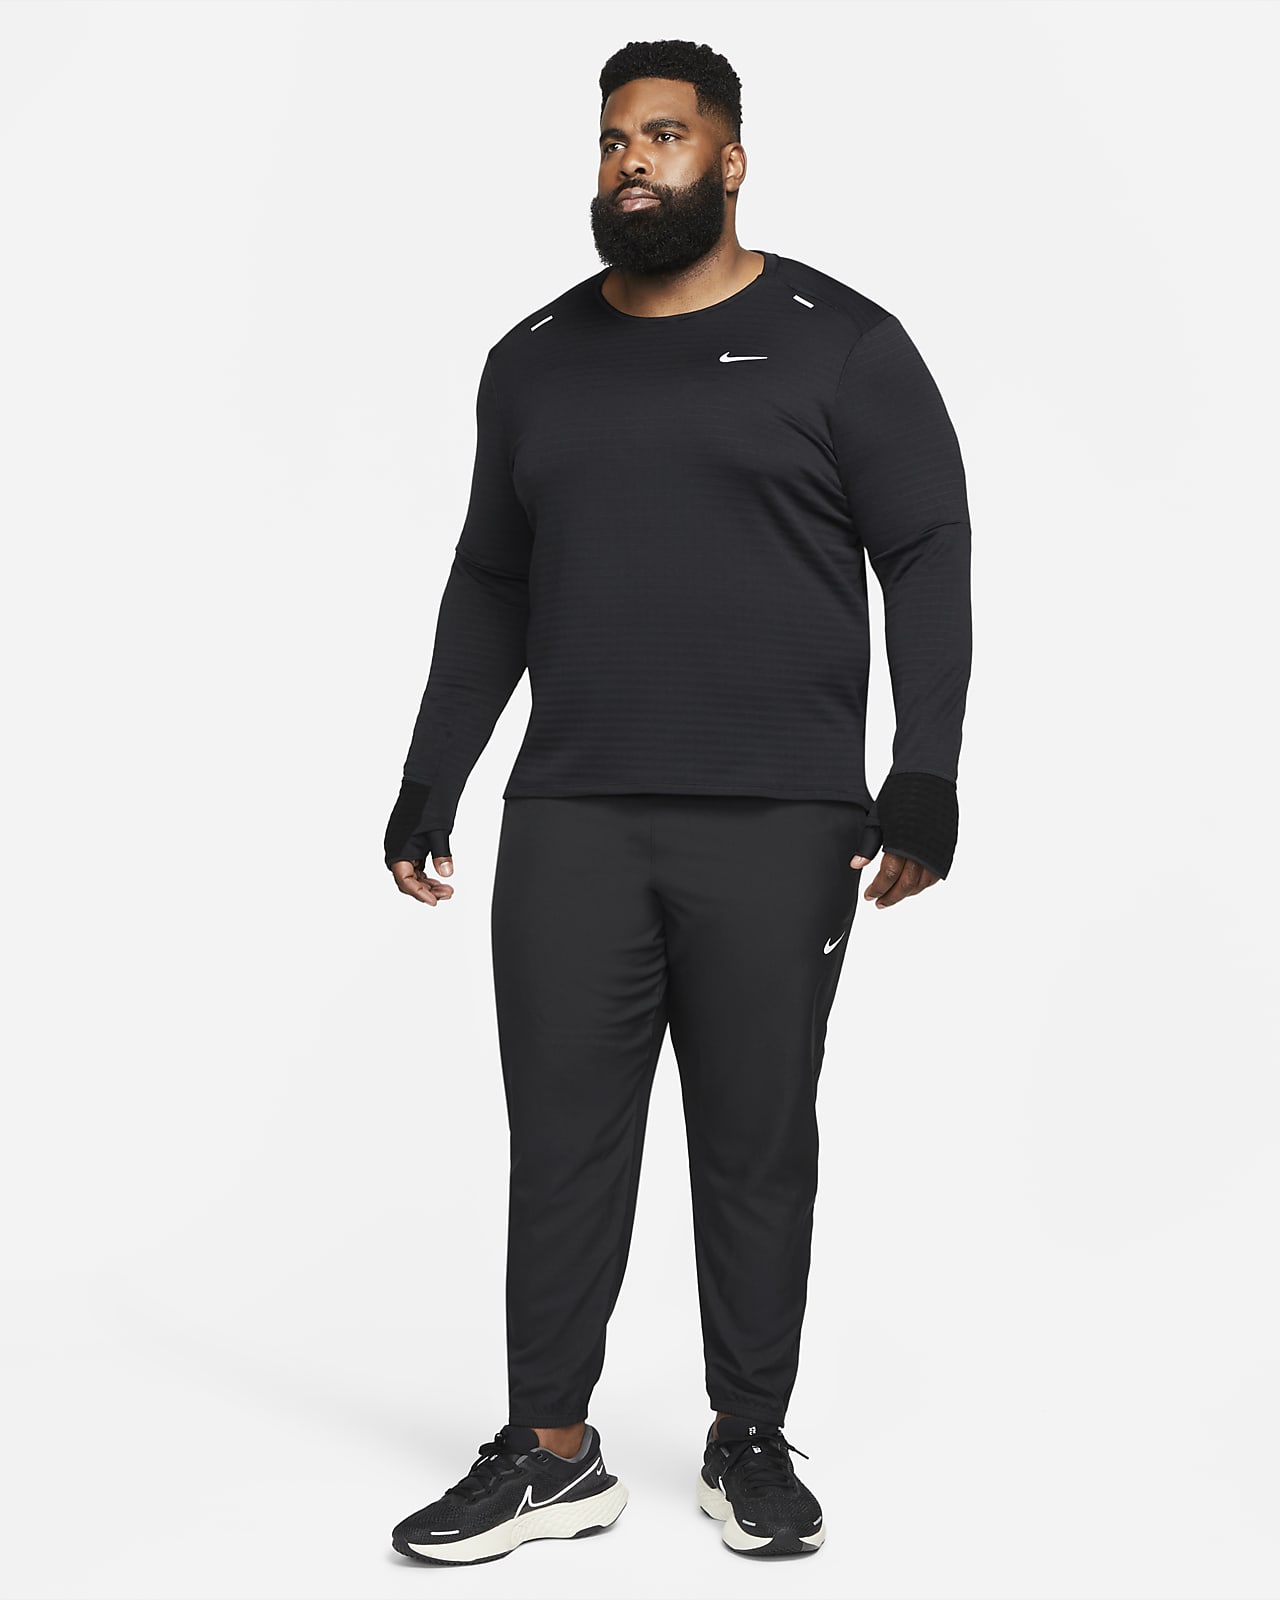 Nike Waterproof Track Pants for Men